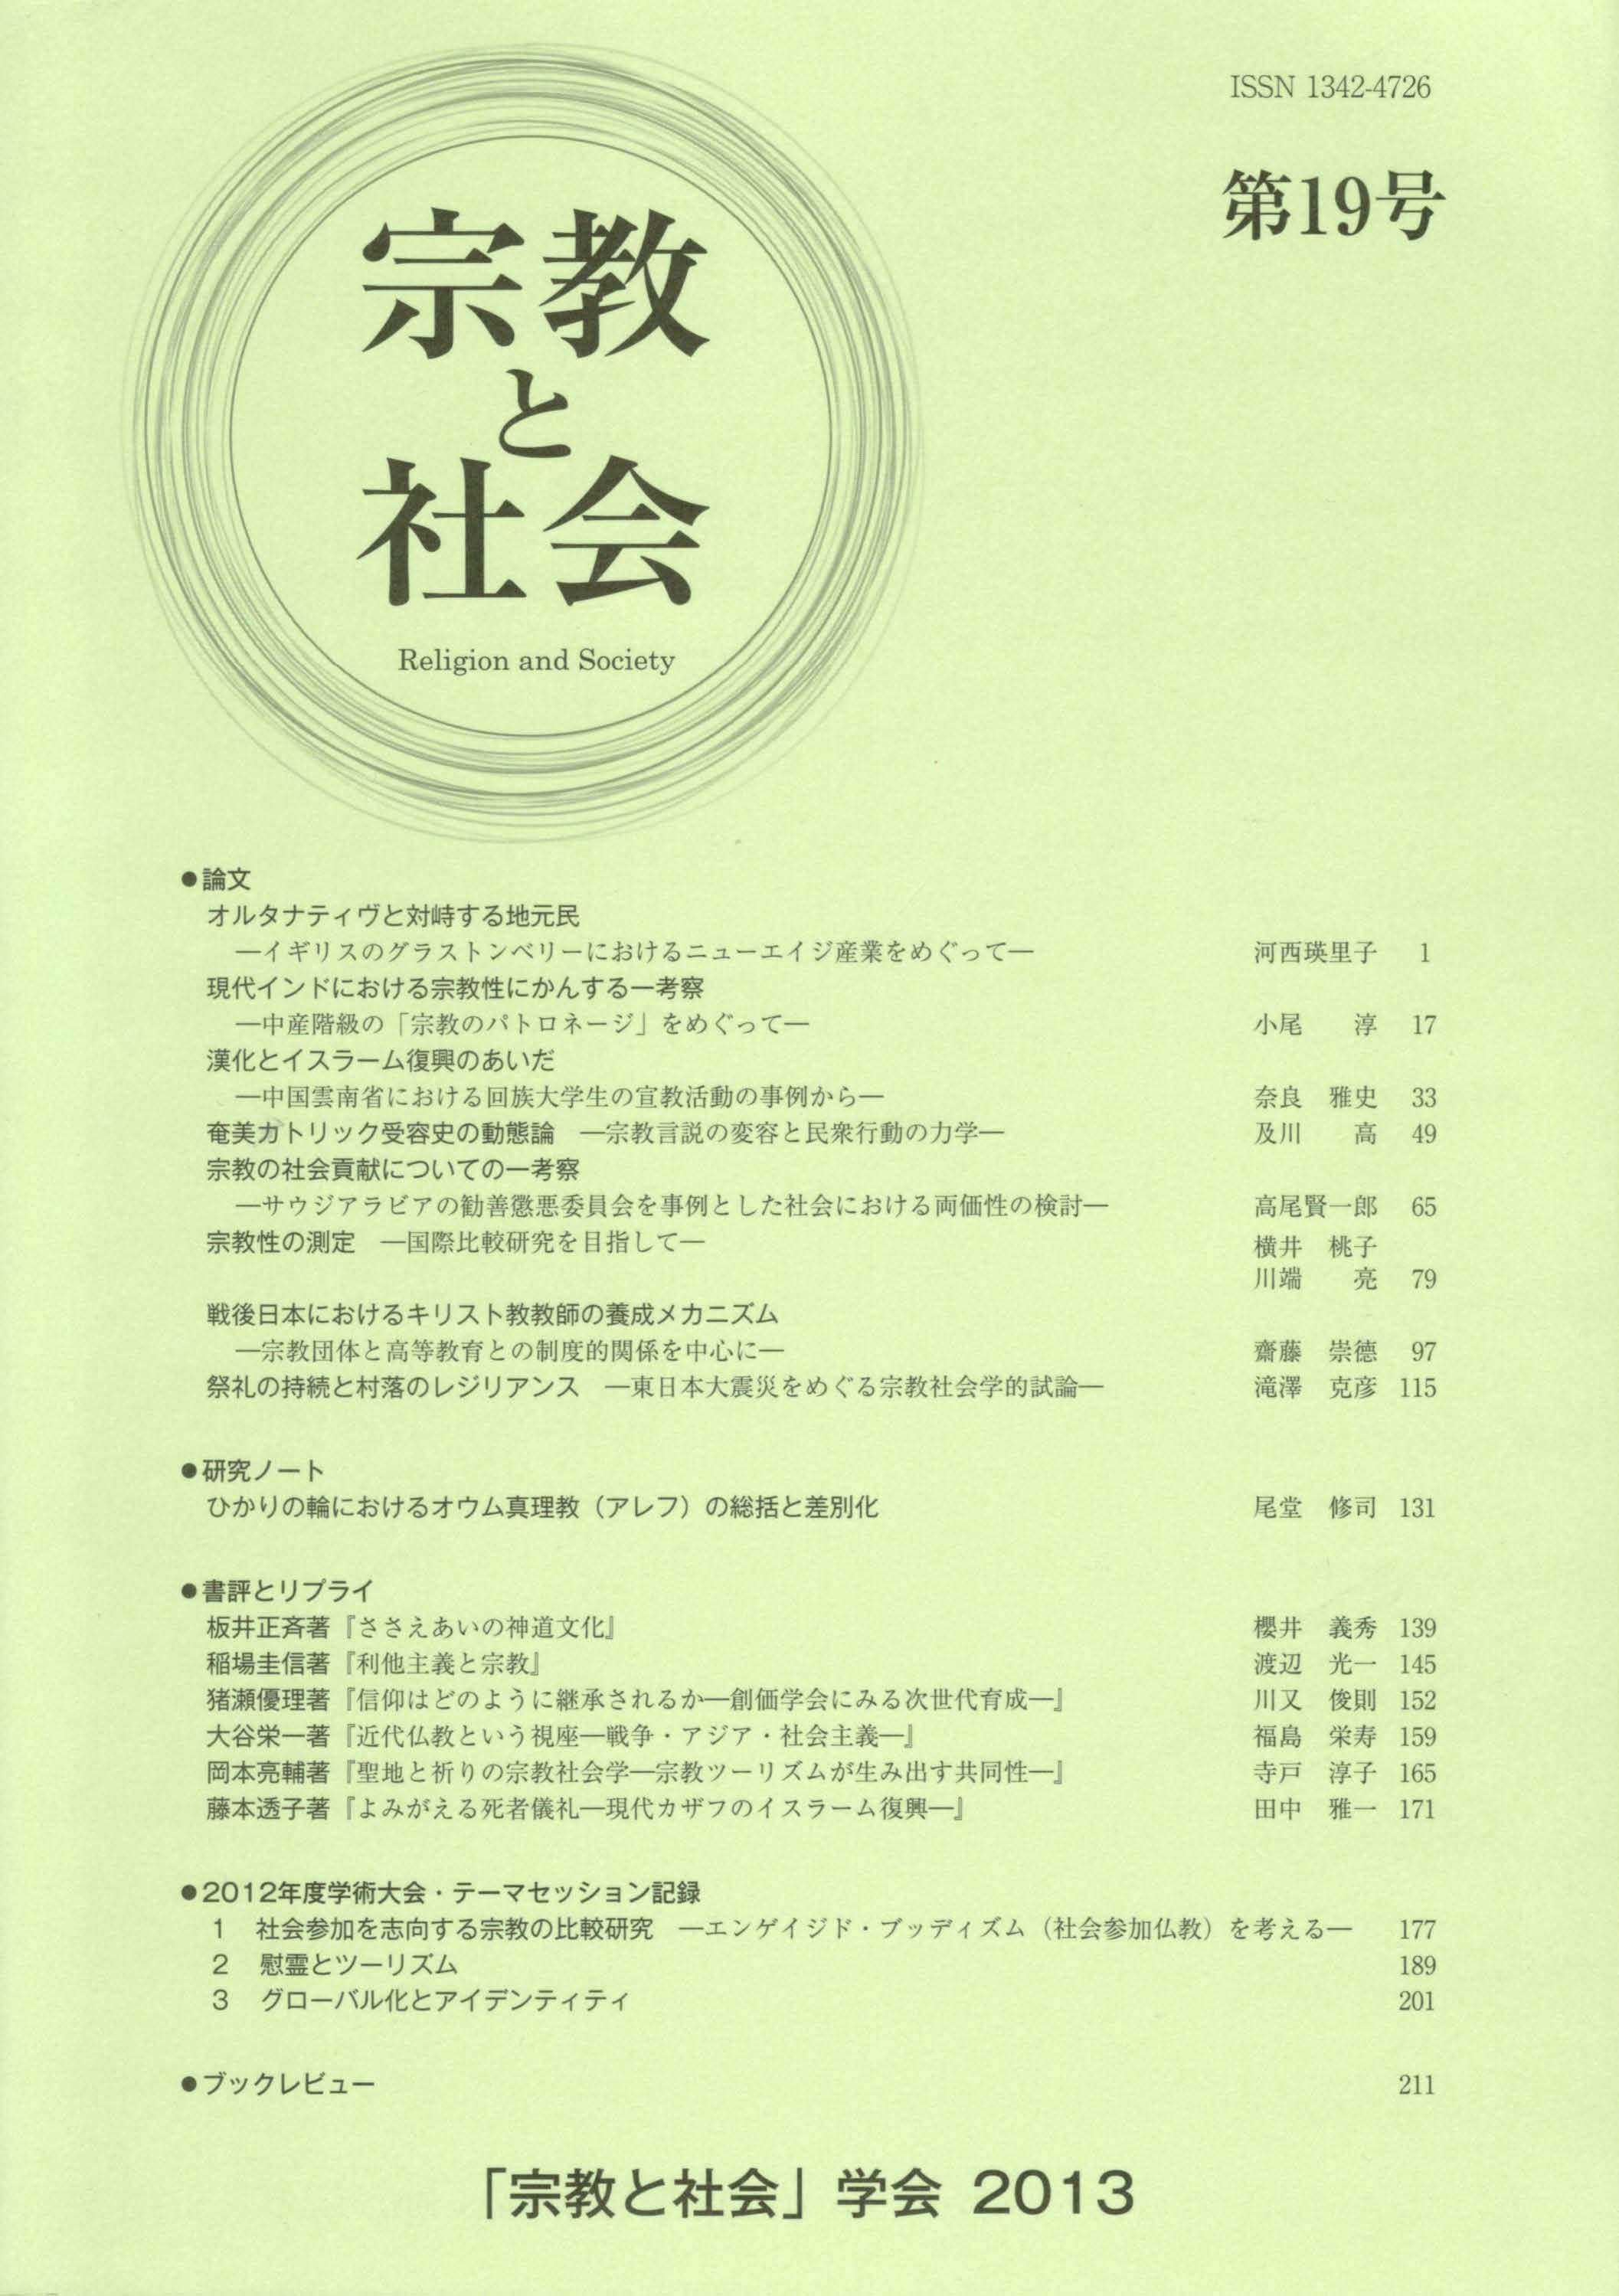 宗教と社会」学会 / The Japanese Association for the Study of Religion and Society